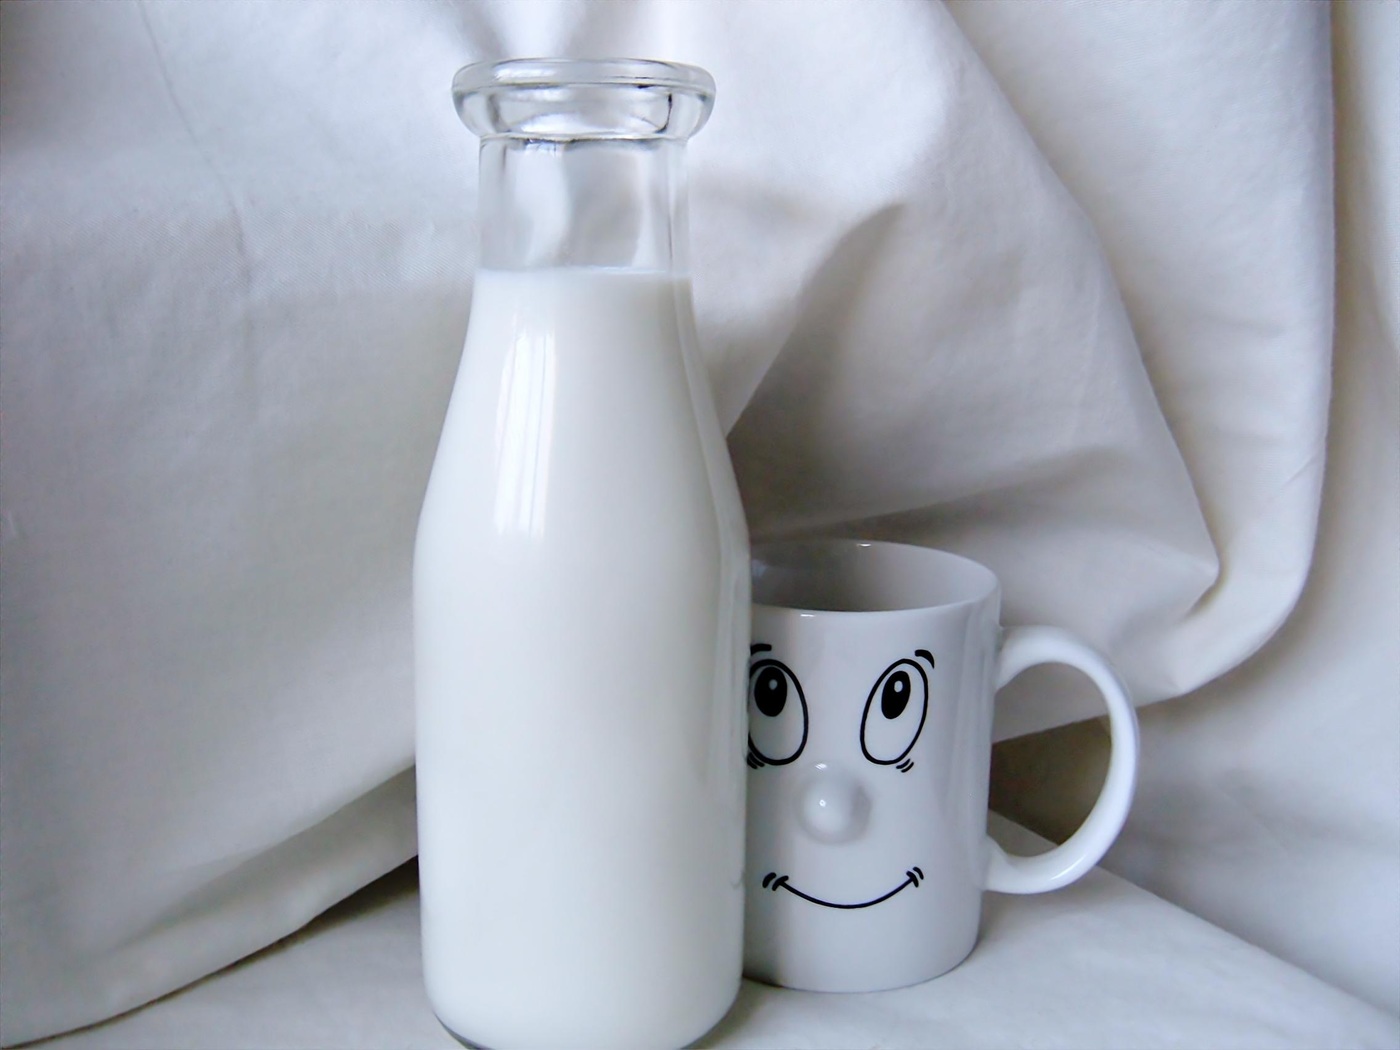 Véd a szívbetegségek, stroke ellen: Ezért érdemes minden nap tejet, tejterméket fogyasztani! - Kutatási eredmény